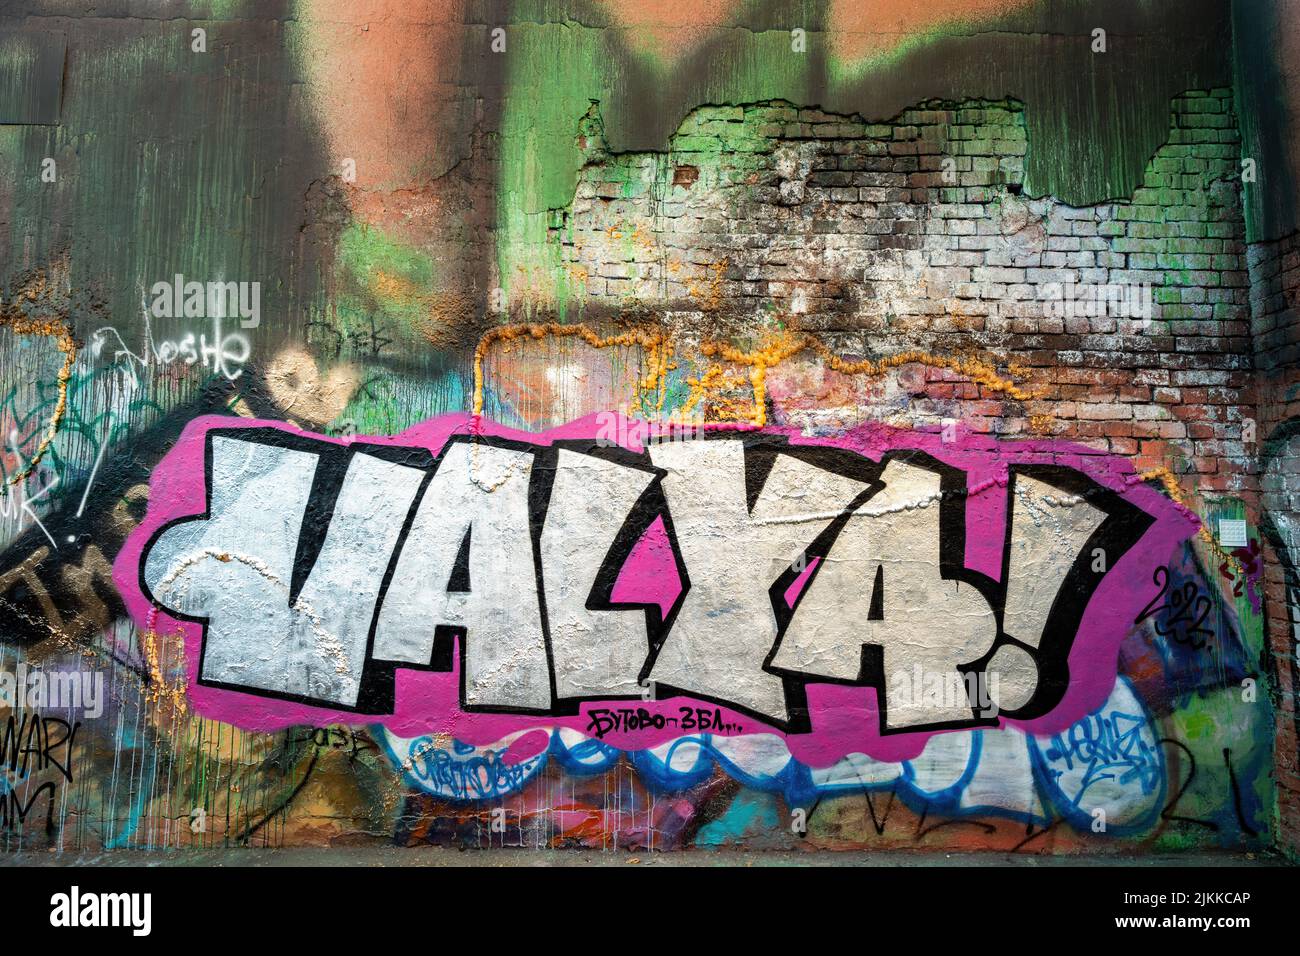 Una foto del murale sociale di Street art graffiti "VALYA!" Su una parete piena di vernice spray a Mosca, Russia Foto Stock